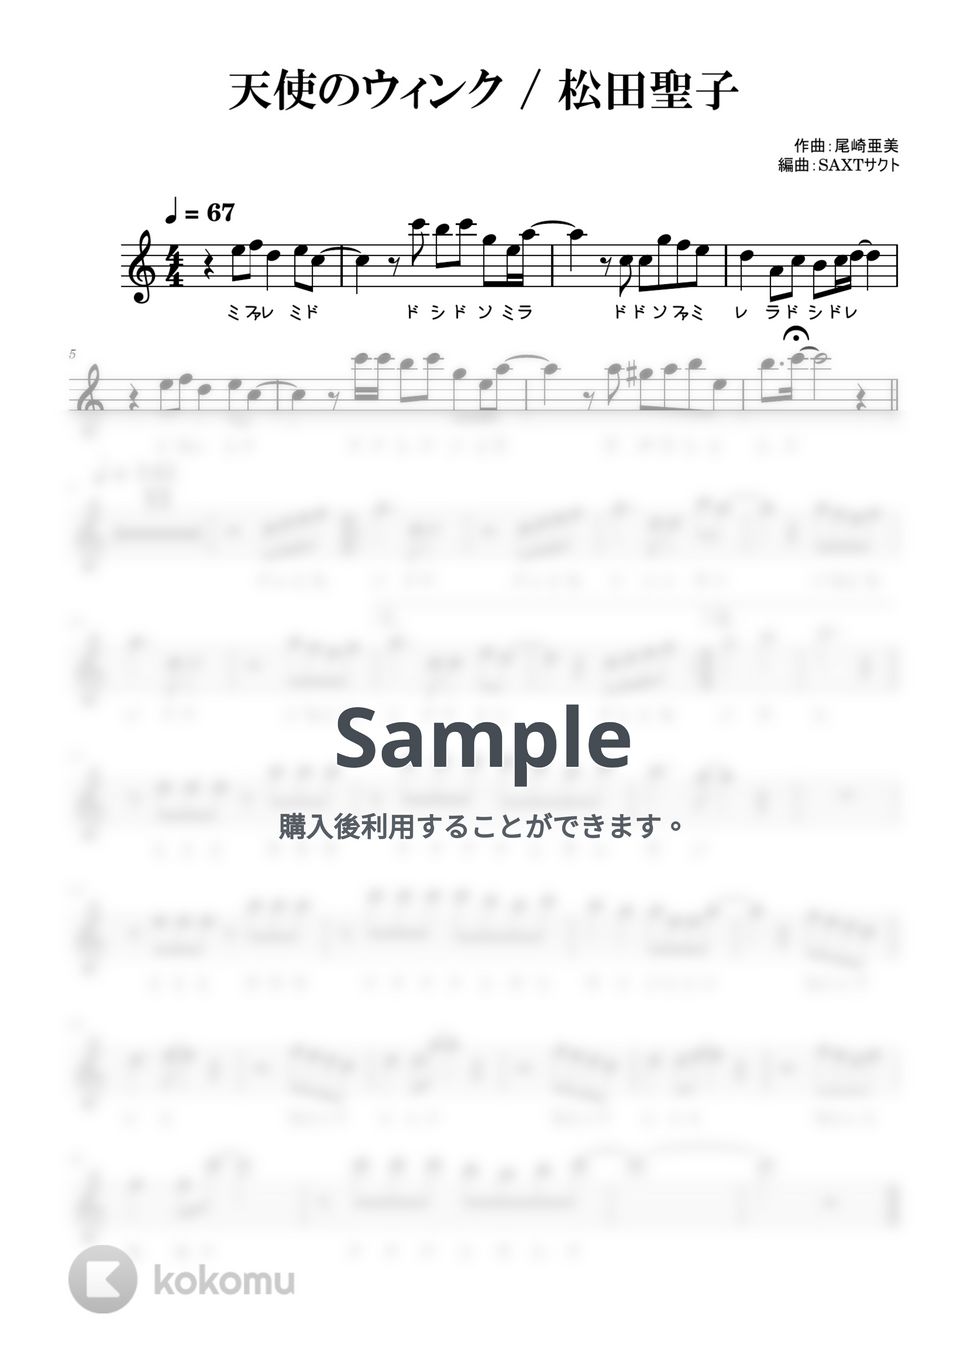 松田聖子 - 天使のウィンク (めちゃラク譜・ドレミあり) by SAXT